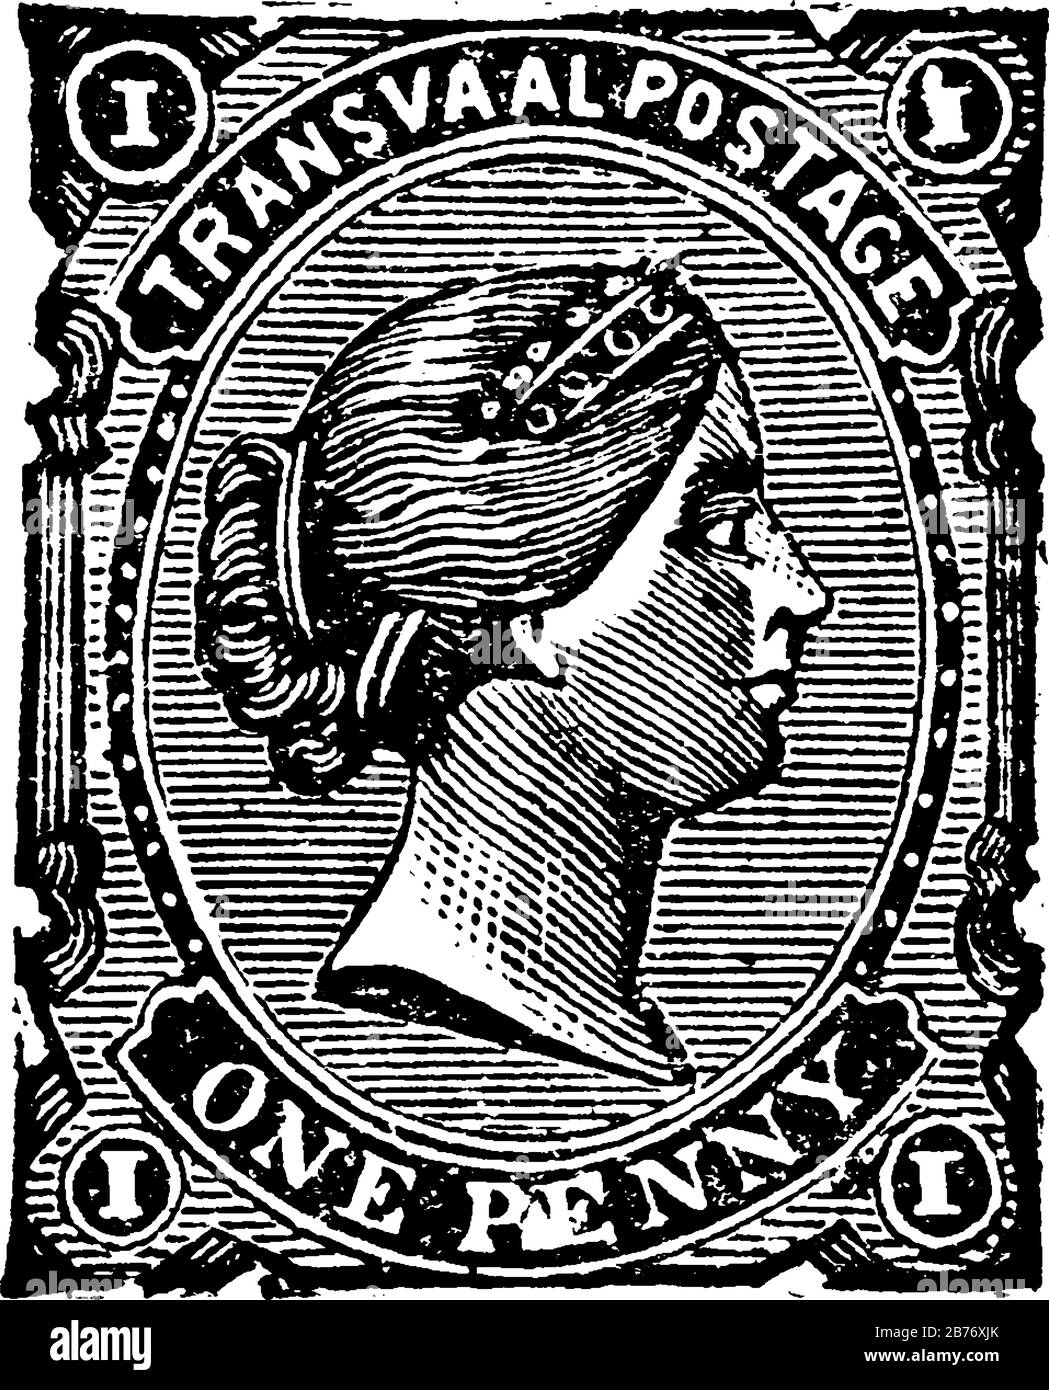 Timbro della Repubblica sudafricana (1 penny) dal 1878-1881, un piccolo pezzo adesivo di carta è stato attaccato a qualcosa per mostrare una quantità di denaro pagato, vintage Illustrazione Vettoriale